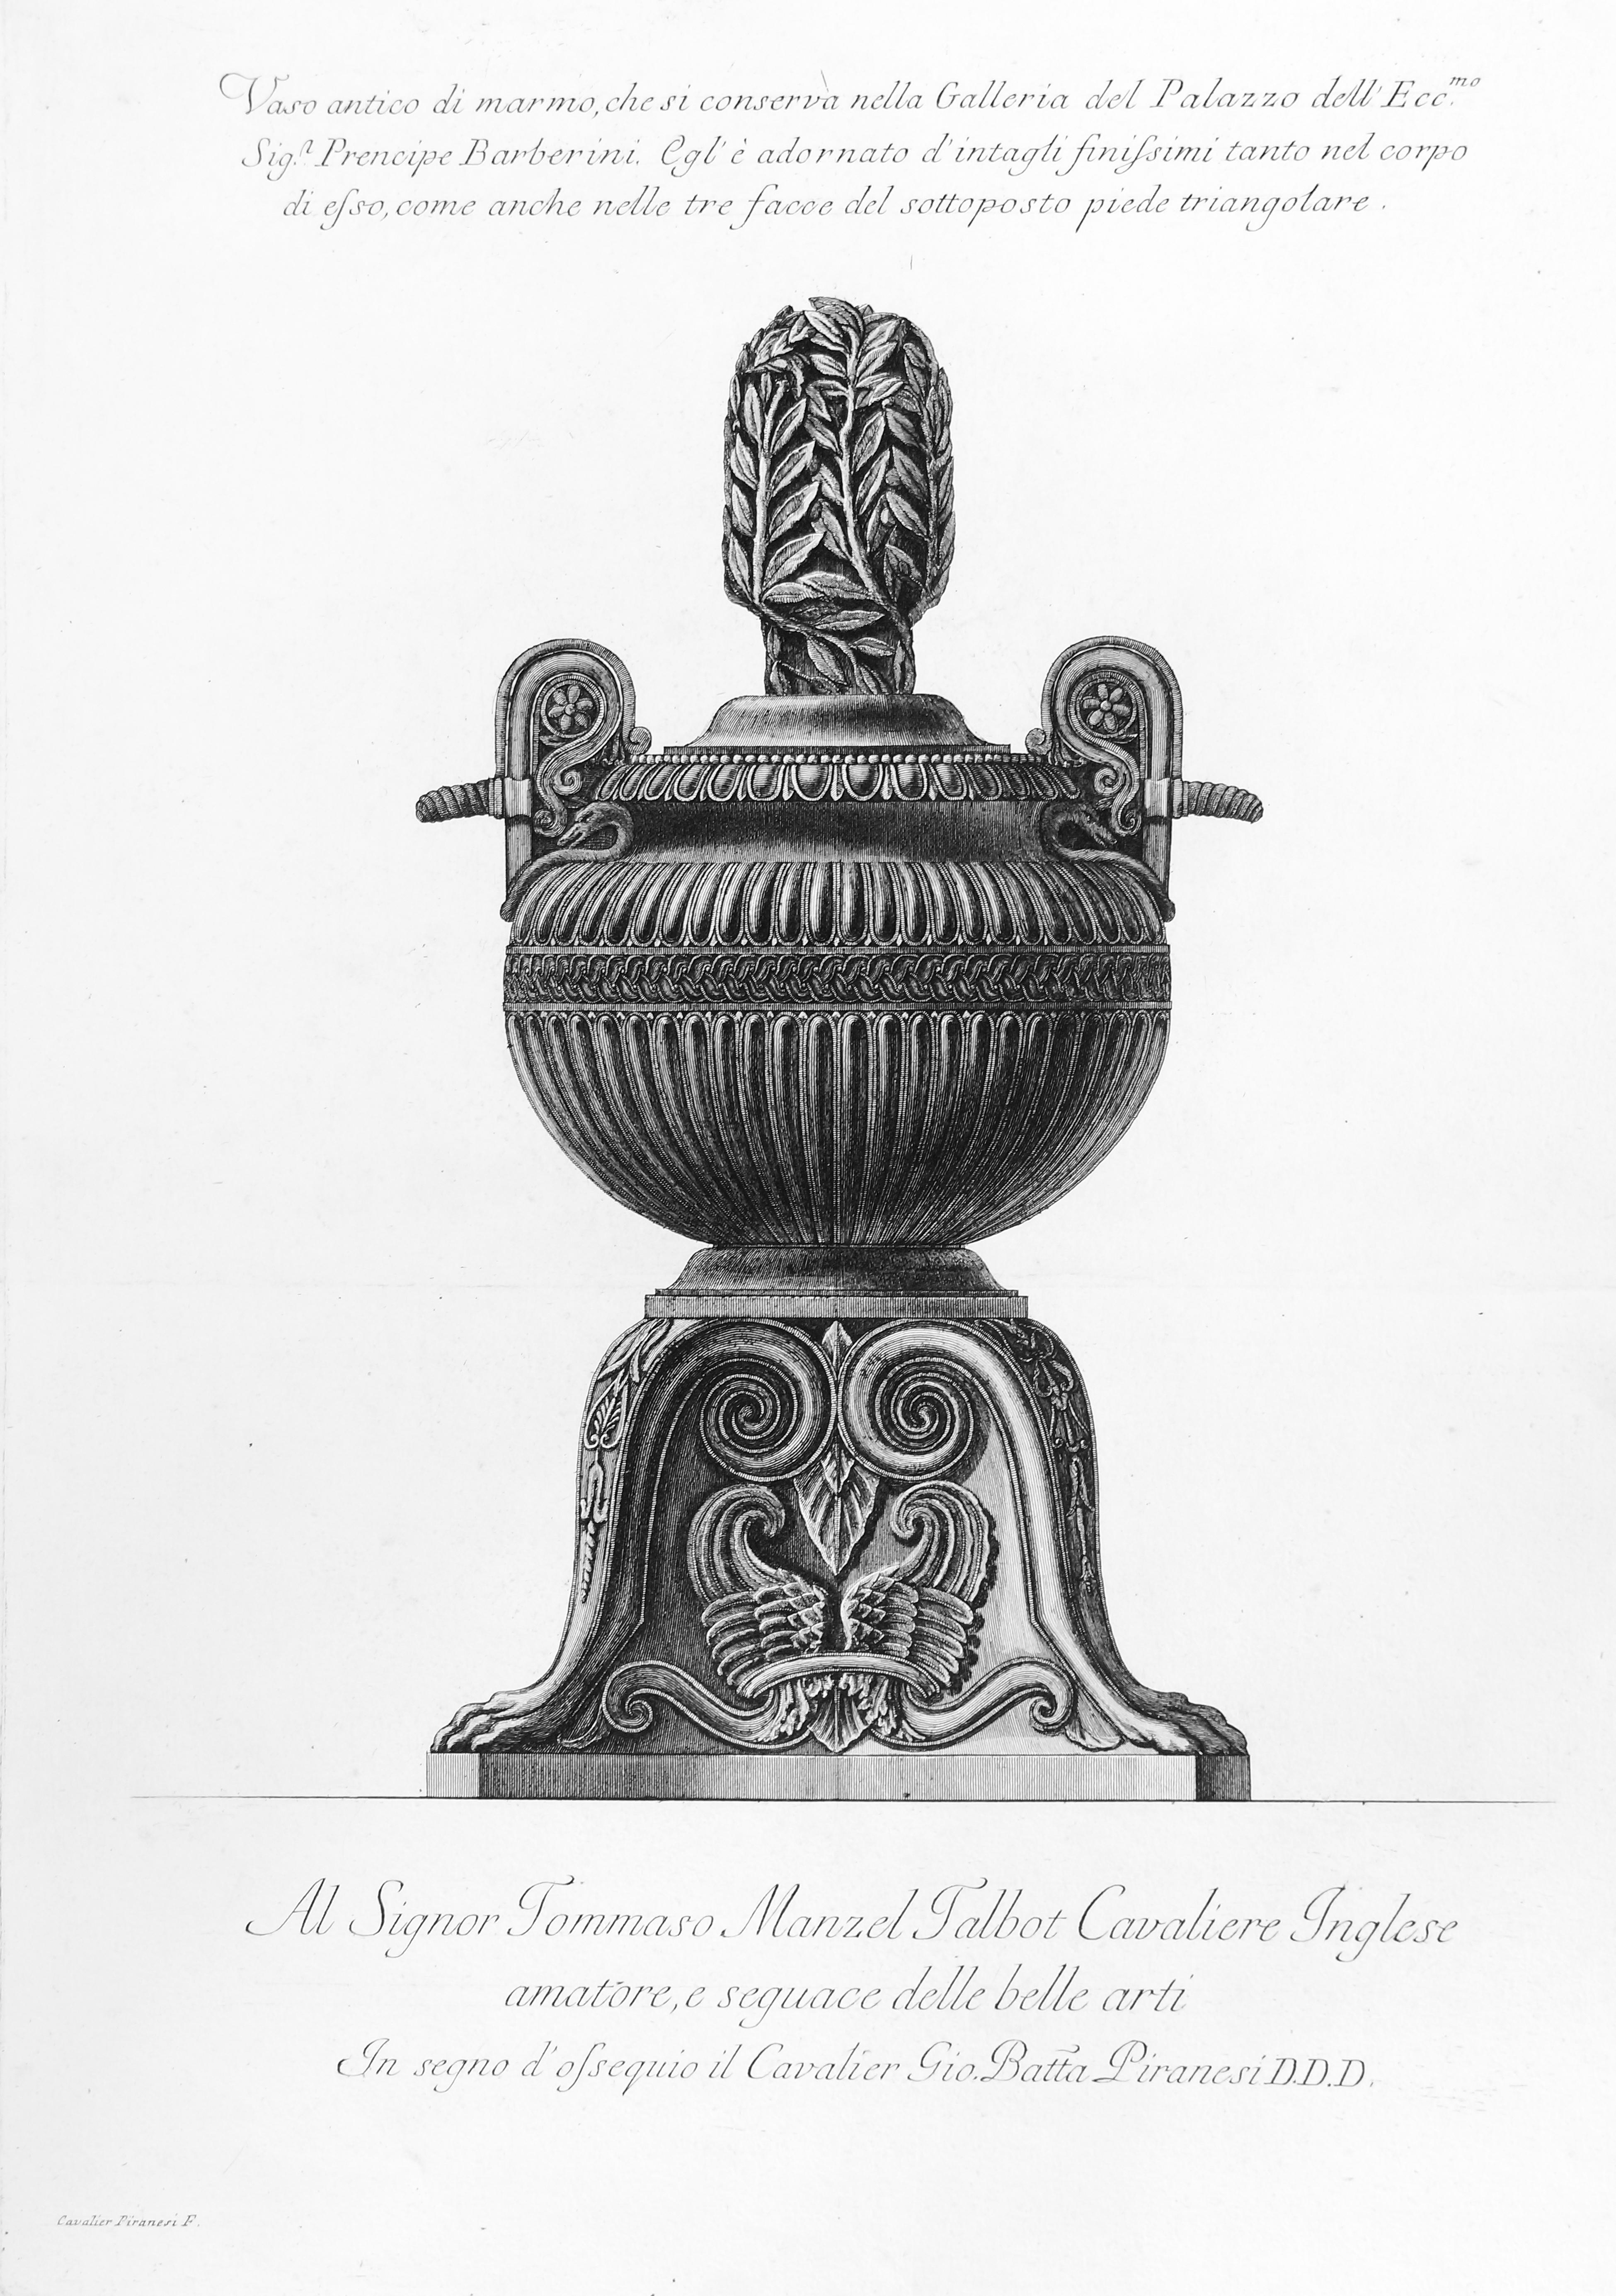 Giovanni Battista Piranesi Figurative Print - Vaso antico di marmo, che si conosceva nella Galleria... - Etching 1778